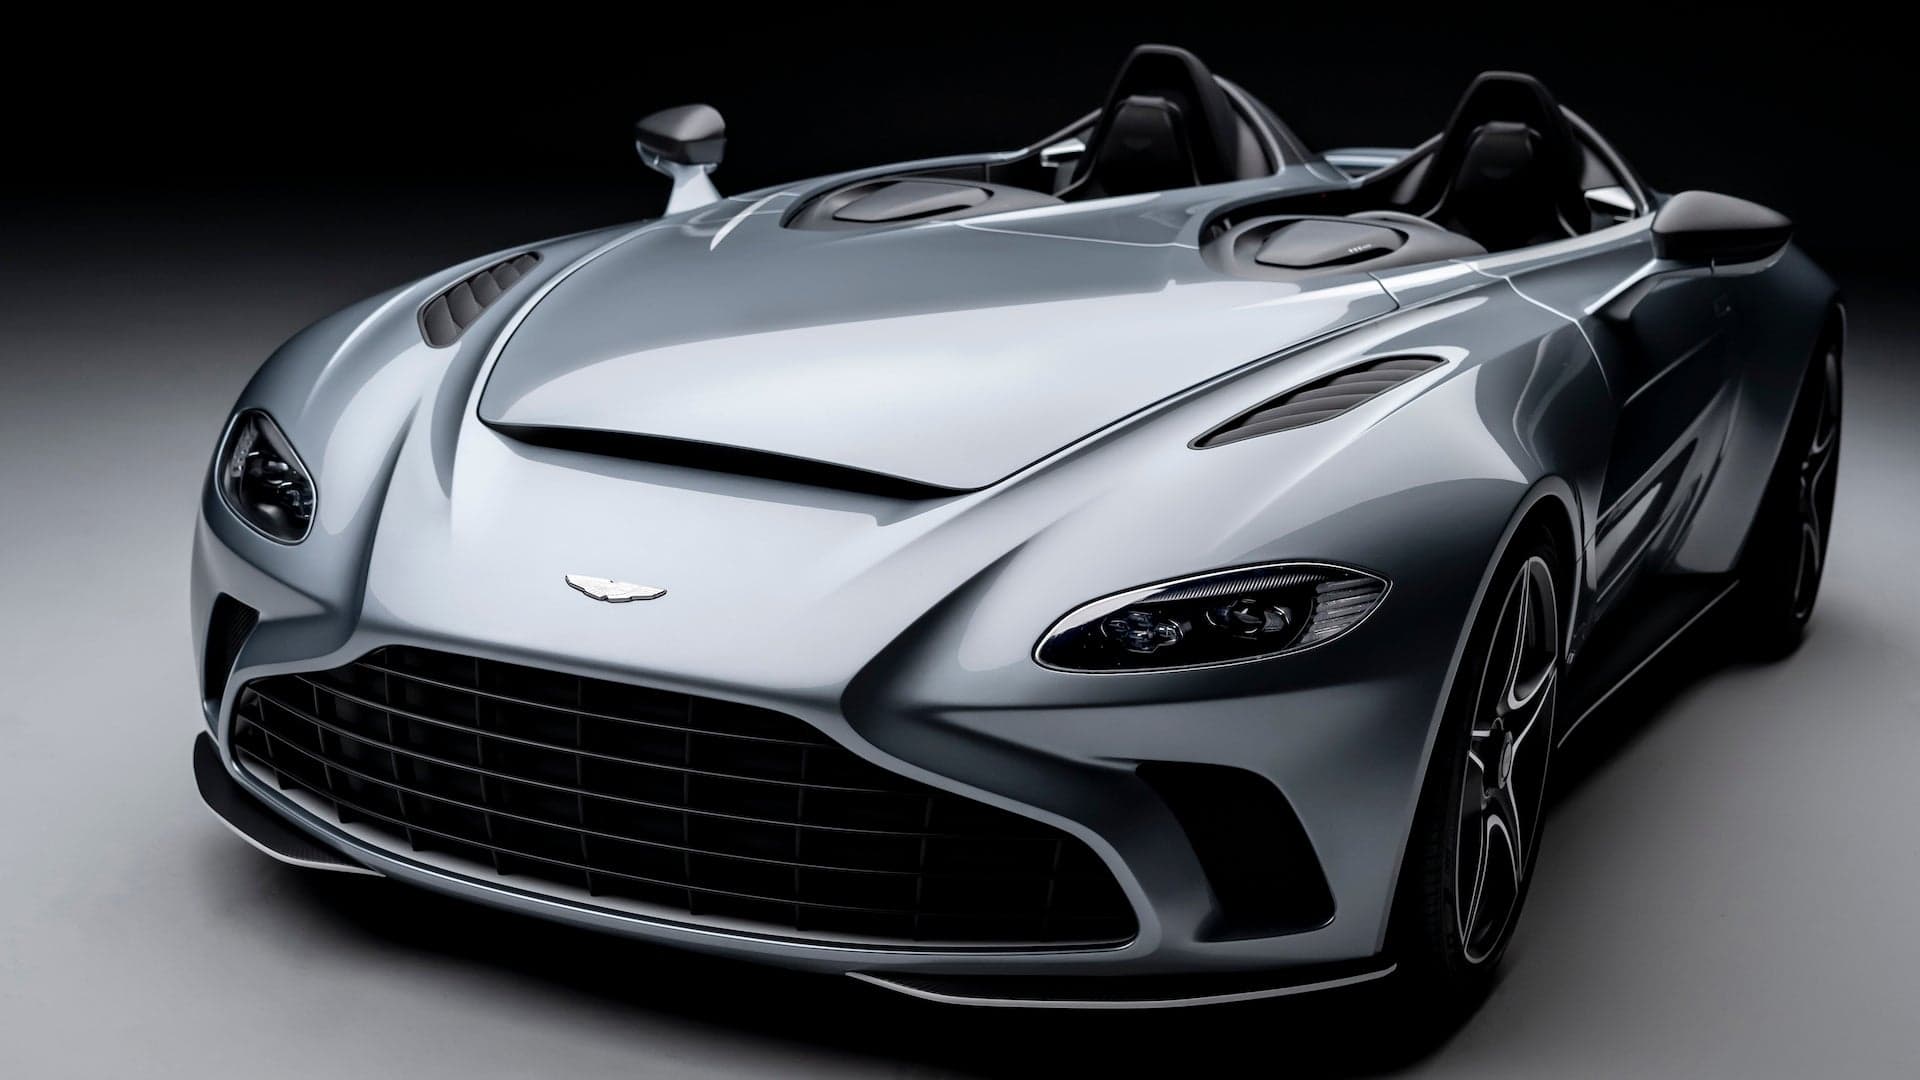 2021 Aston Martin V12 Speedster Has 700 Horsepower, No Windshield